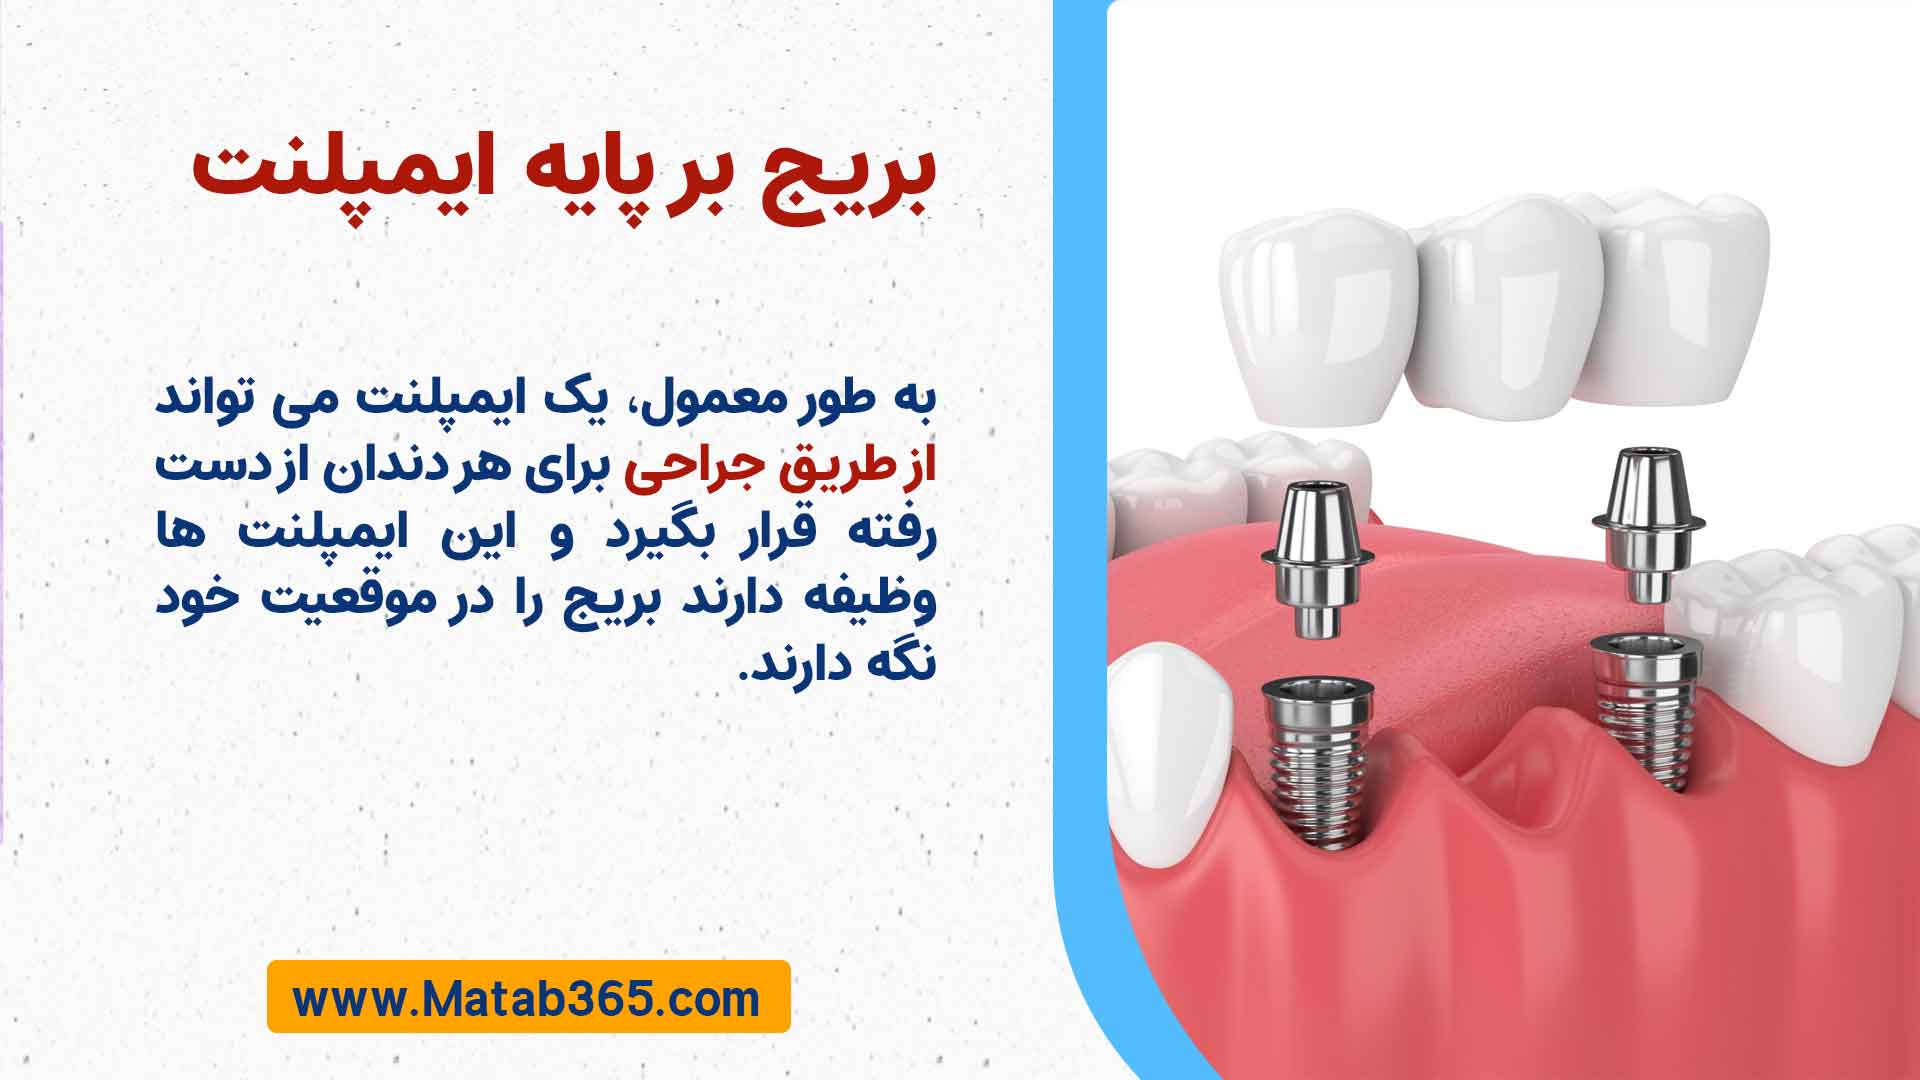 بریج بر پایه ایمپلنت (Implant-supported dental bridge)